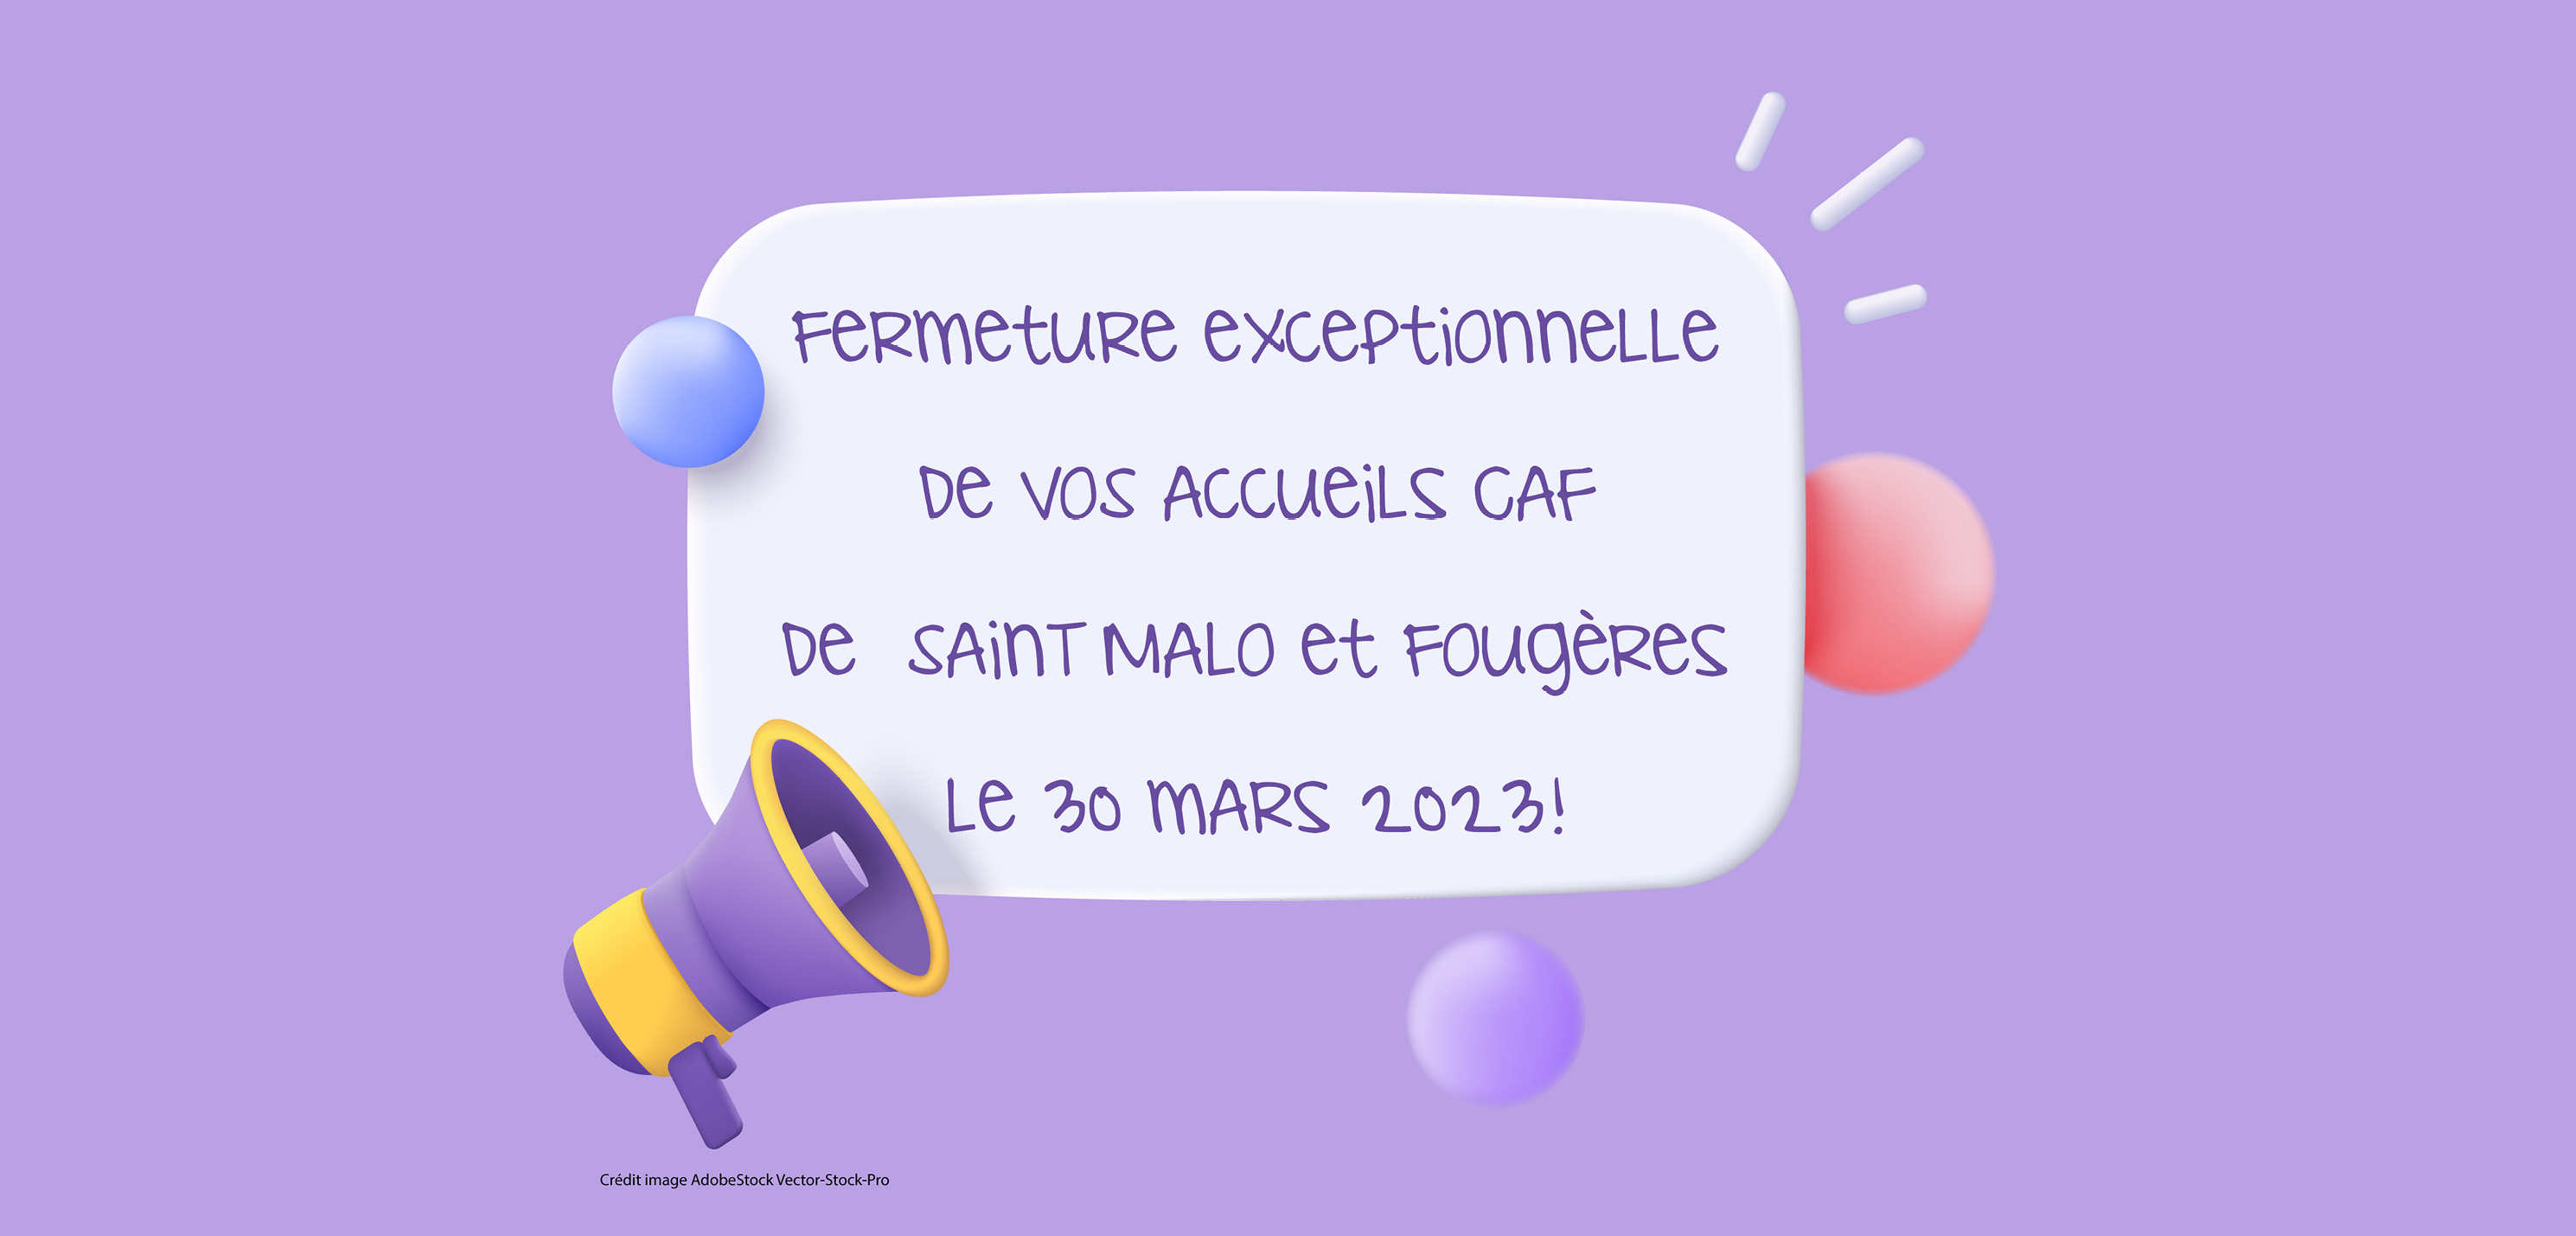 30 mars après-midi : Fermeture exceptionnelle de vos accueils Caf de Saint-Malo et Fougères